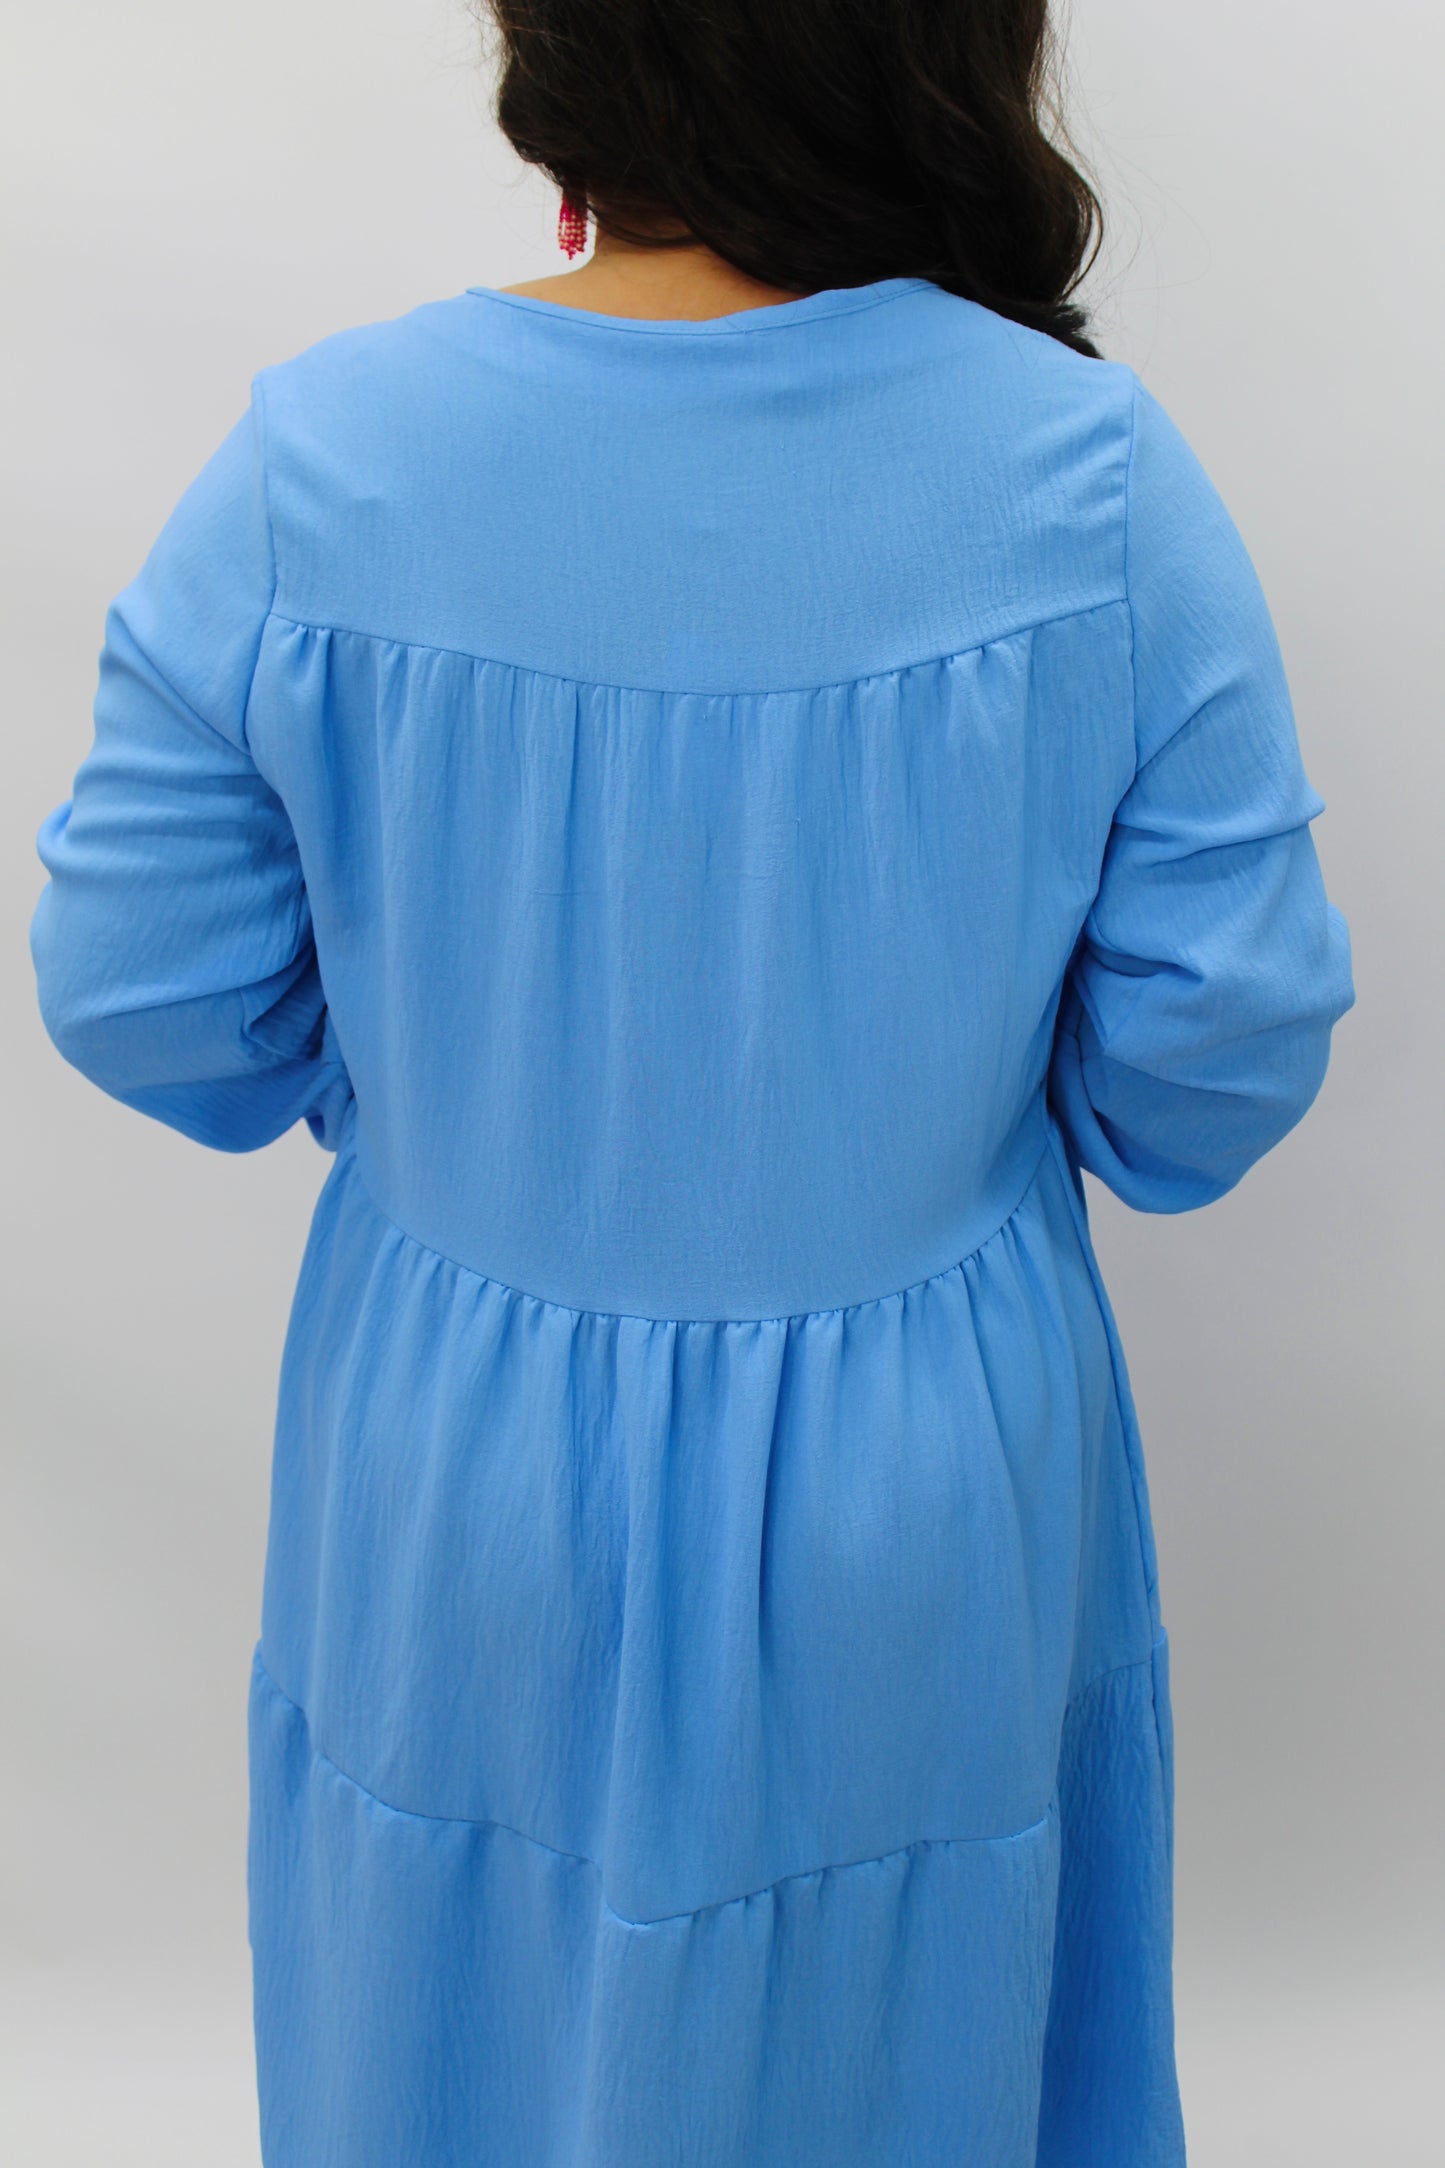 The Grace Blue V-neck Tiered Dress